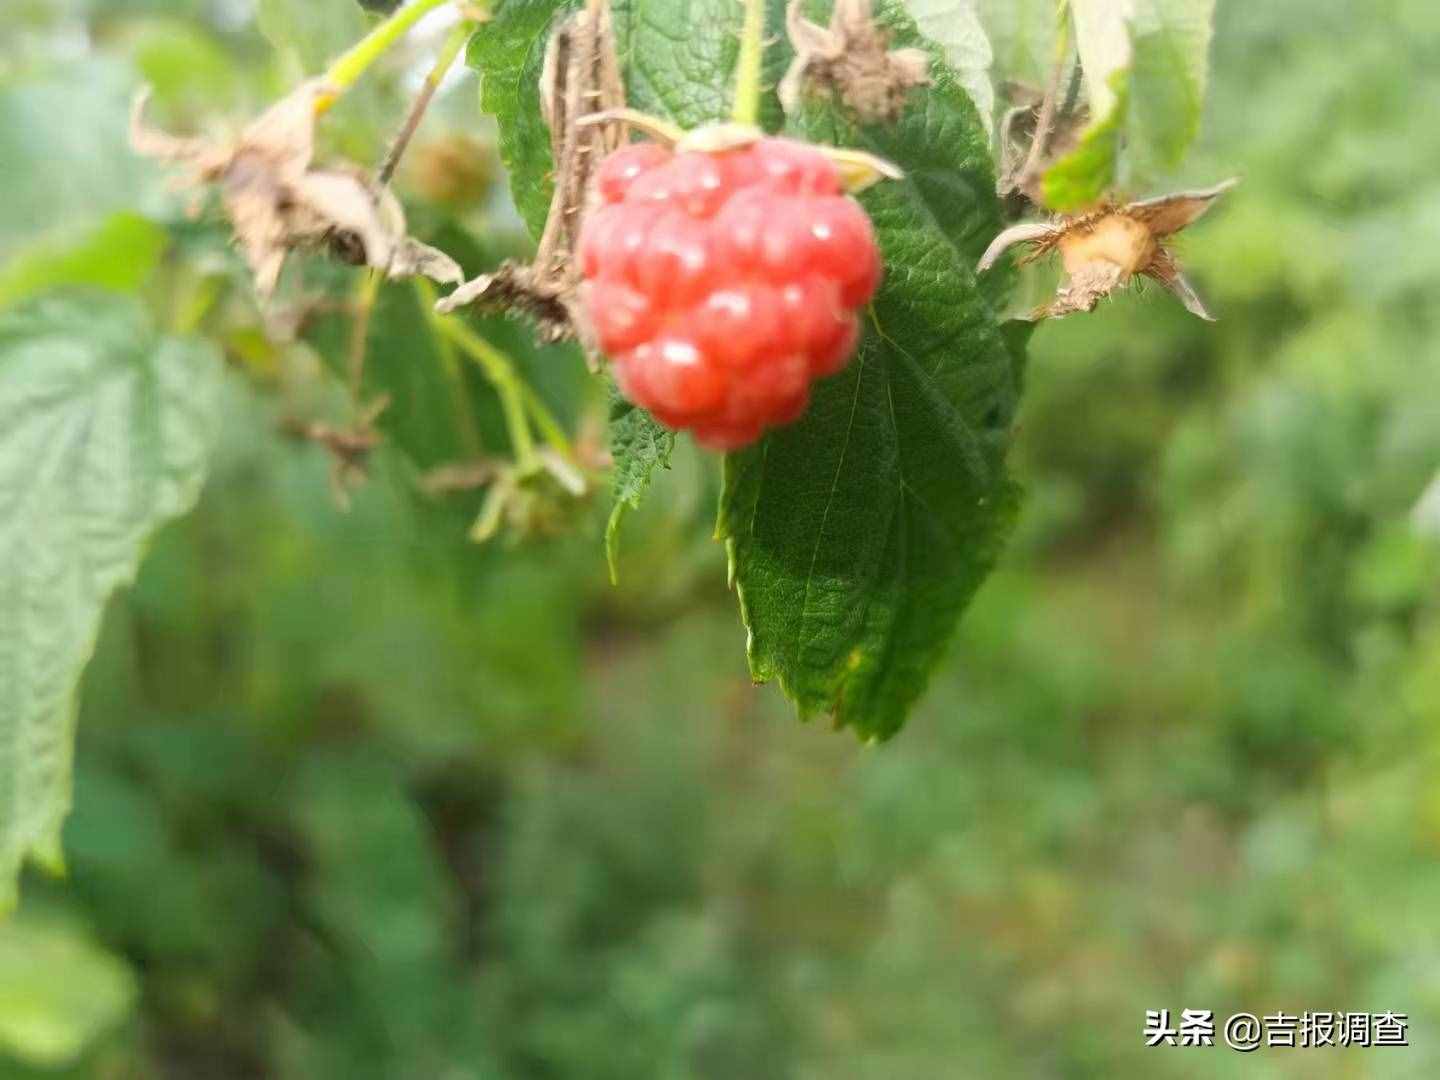 小树莓要成大气候！抚松县抽水乡科学拓宽农业增效、农民增收新路子